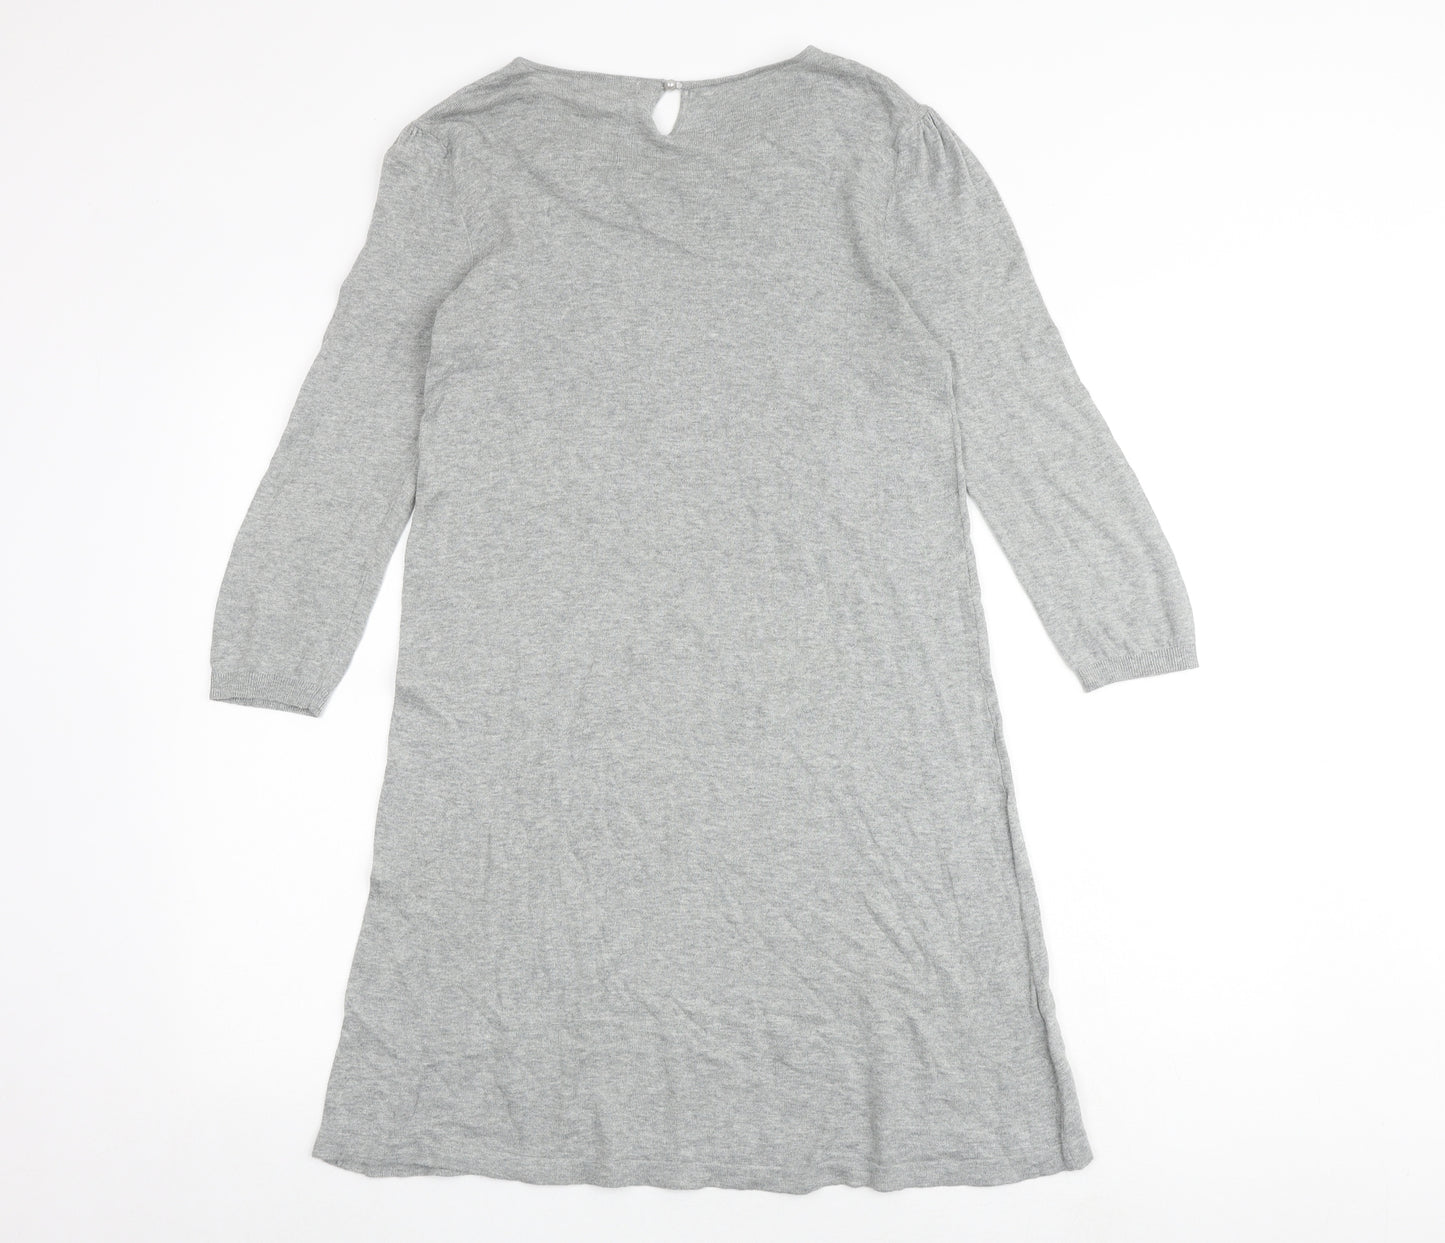 NEXT Womens Grey 100% Cotton Jumper Dress Size 12 Round Neck Button